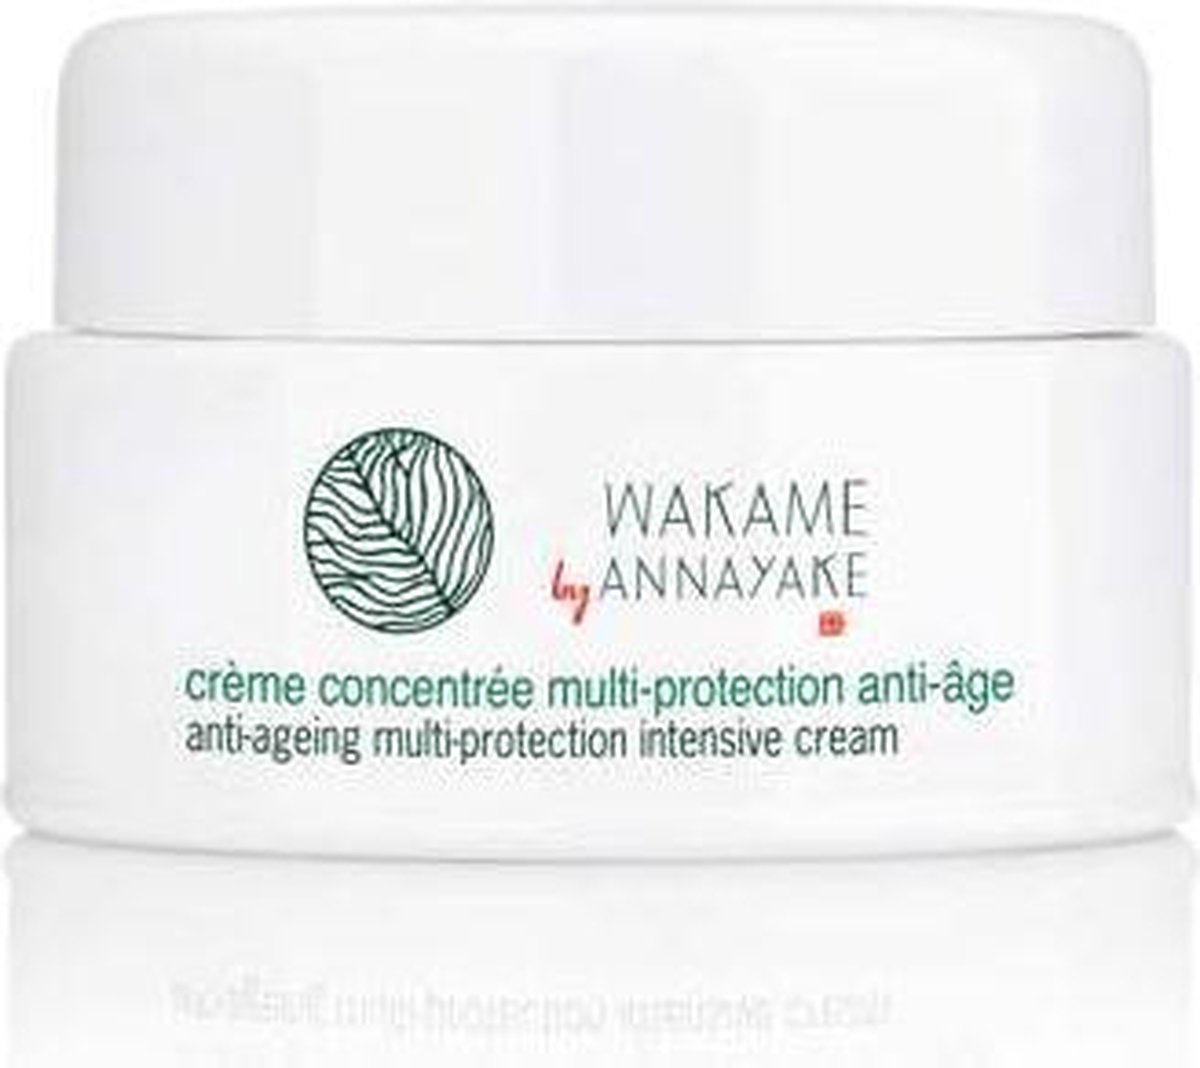 Annayake Wakame Concentrée Multi-protection Anti-Age Gezichtscrème